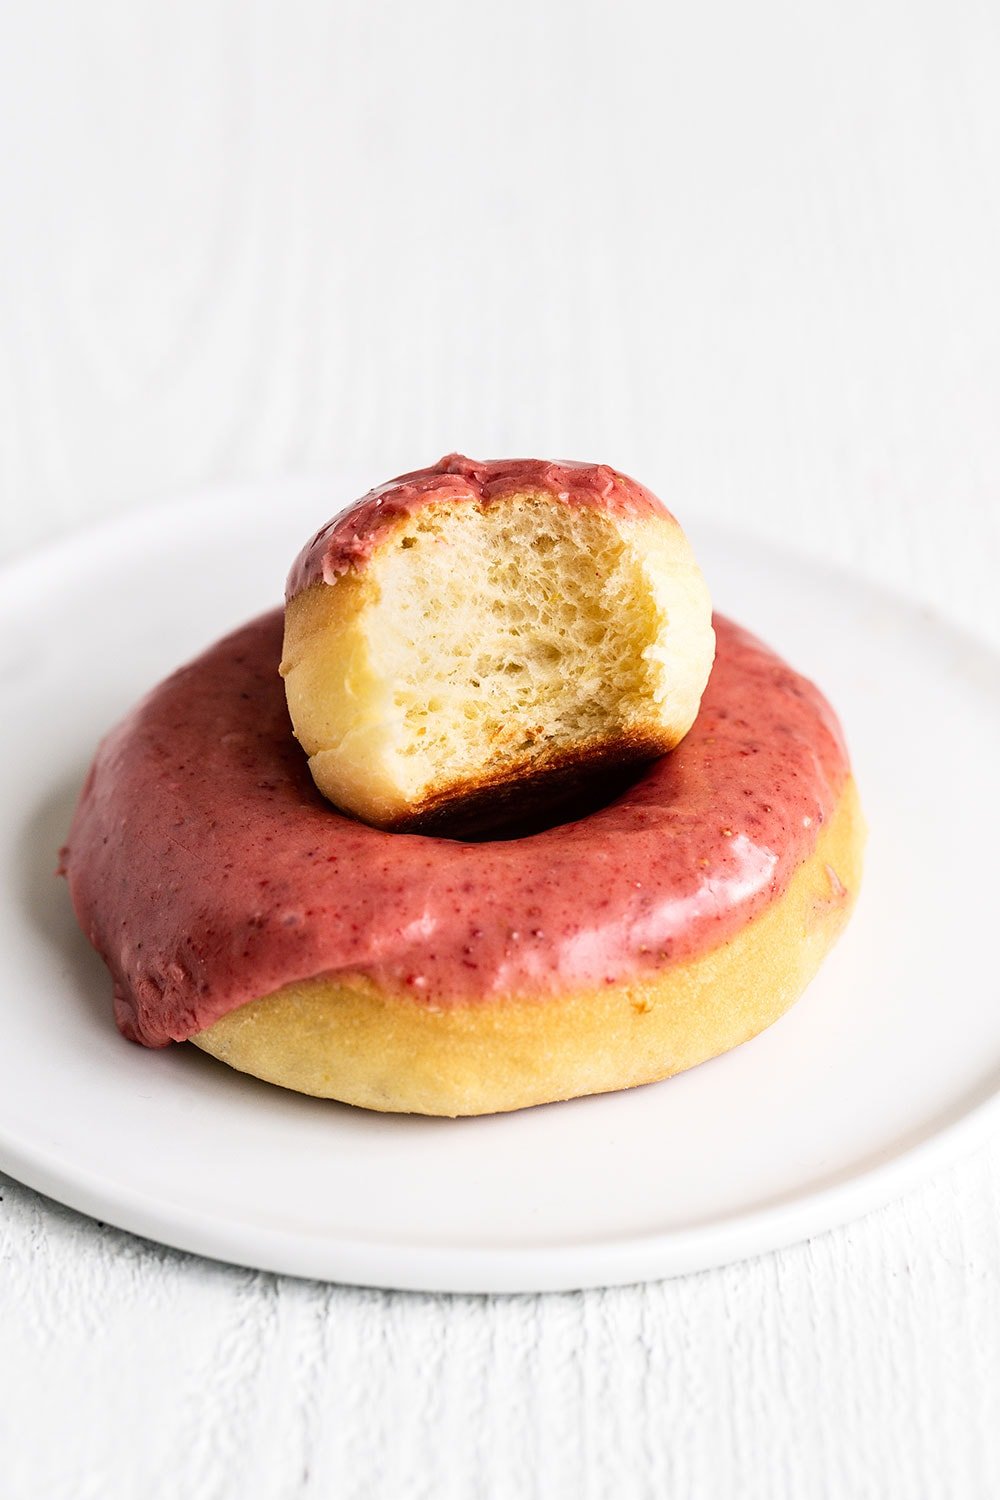 Doughnut on a plate with a half eaten doughnut hole